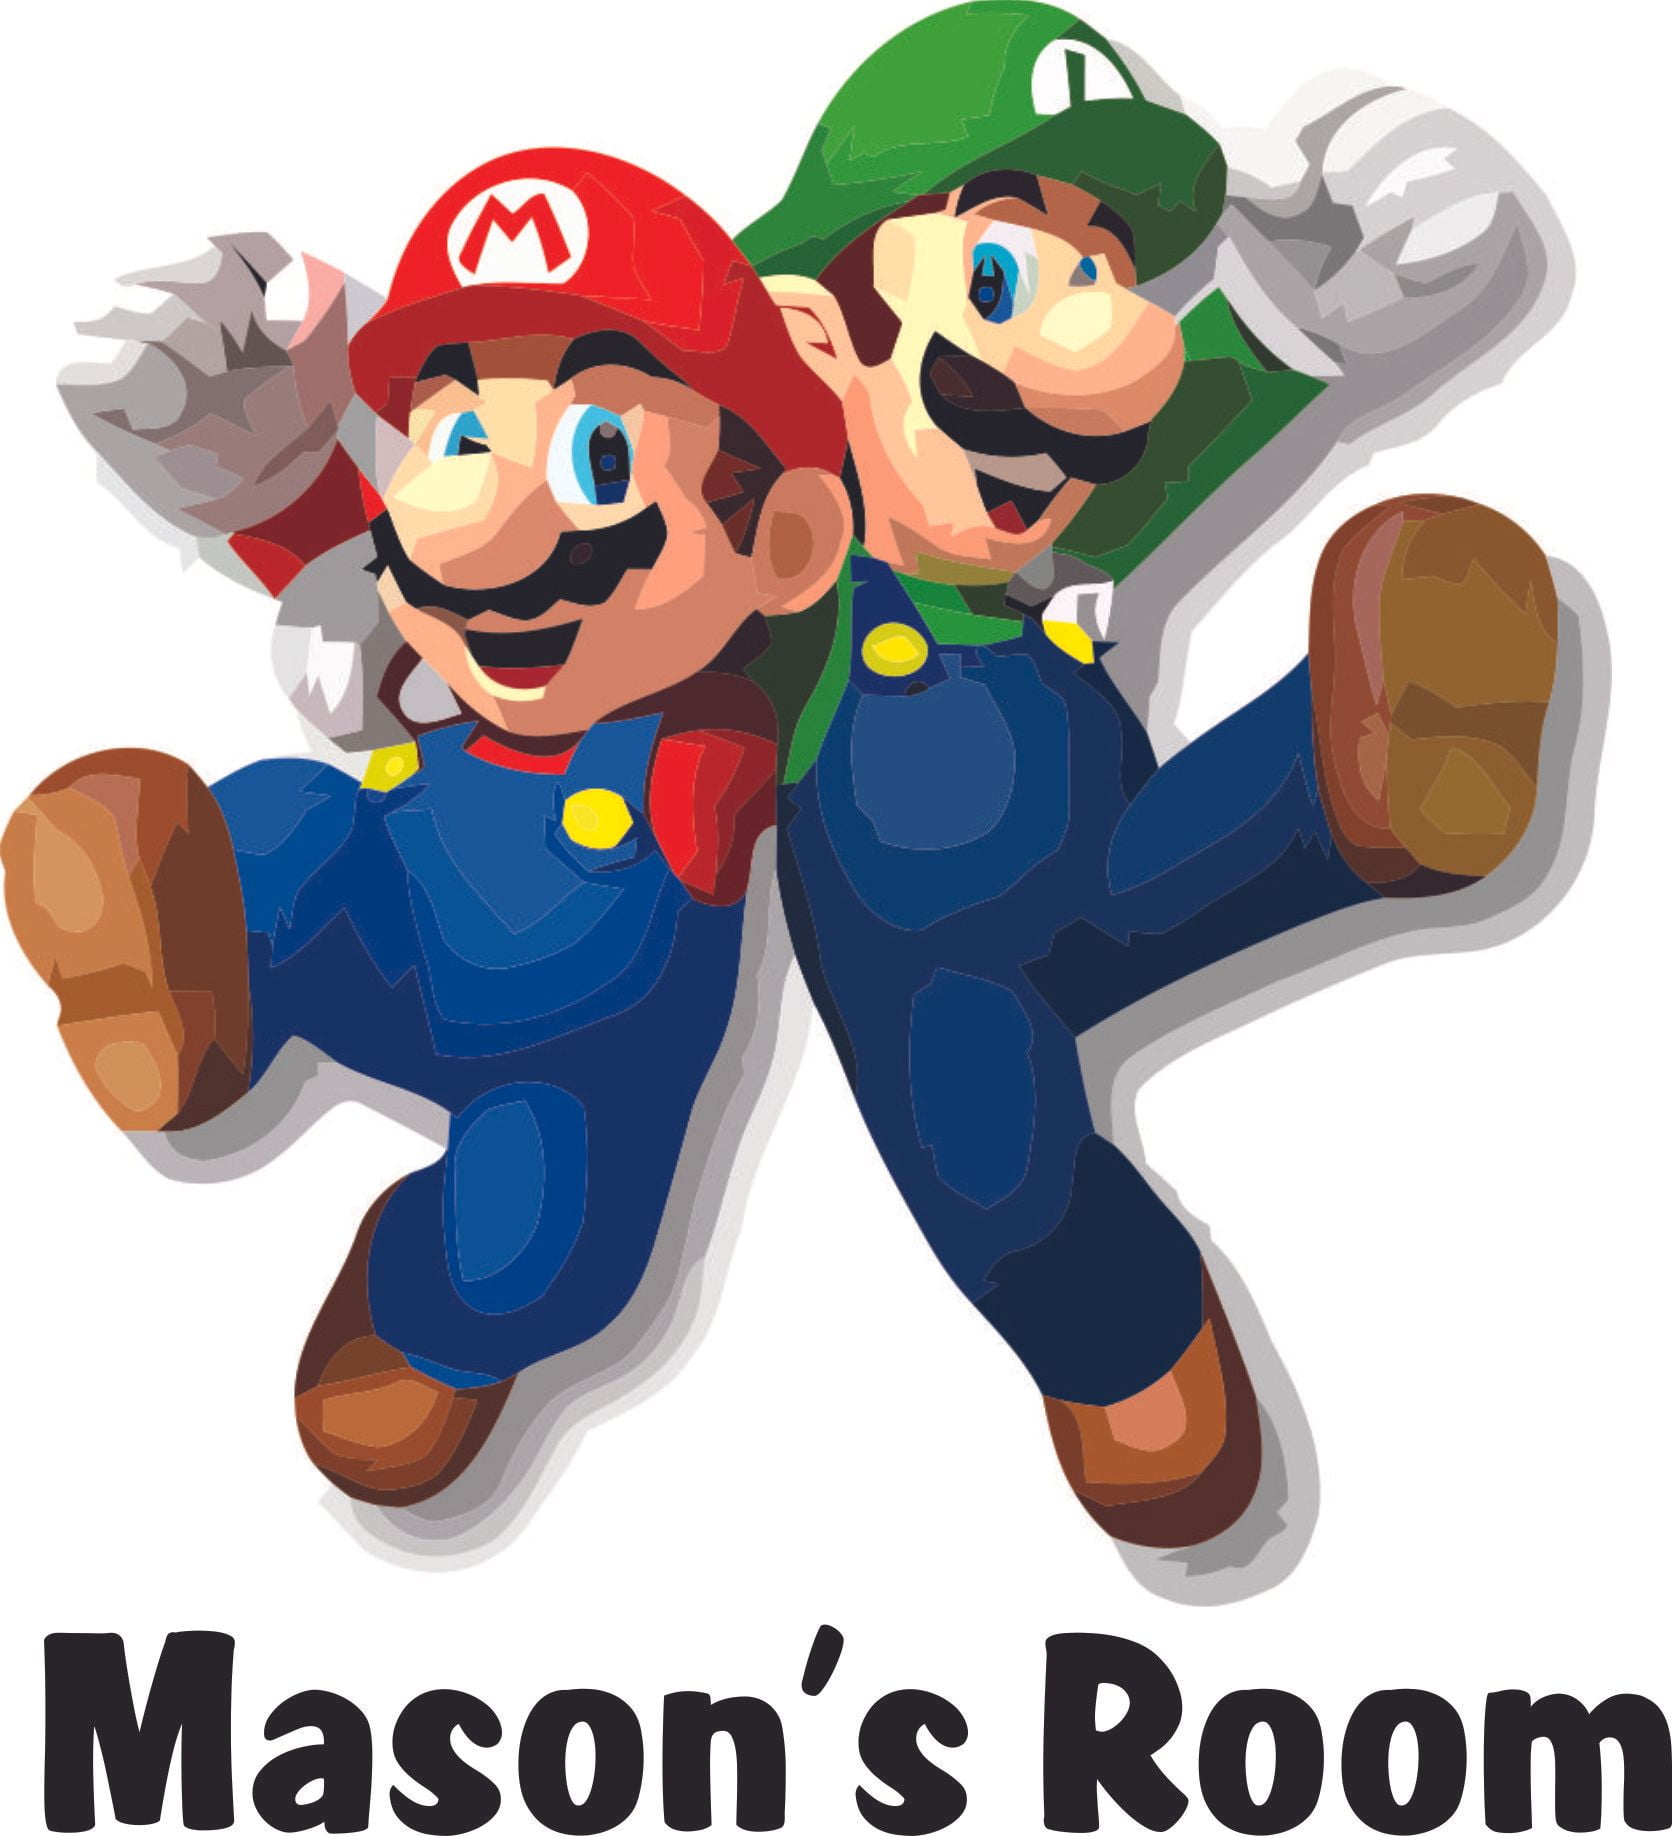 Wall Sticker 32 pc Super Mario Galaxy 2 Children Room Decor NEW 